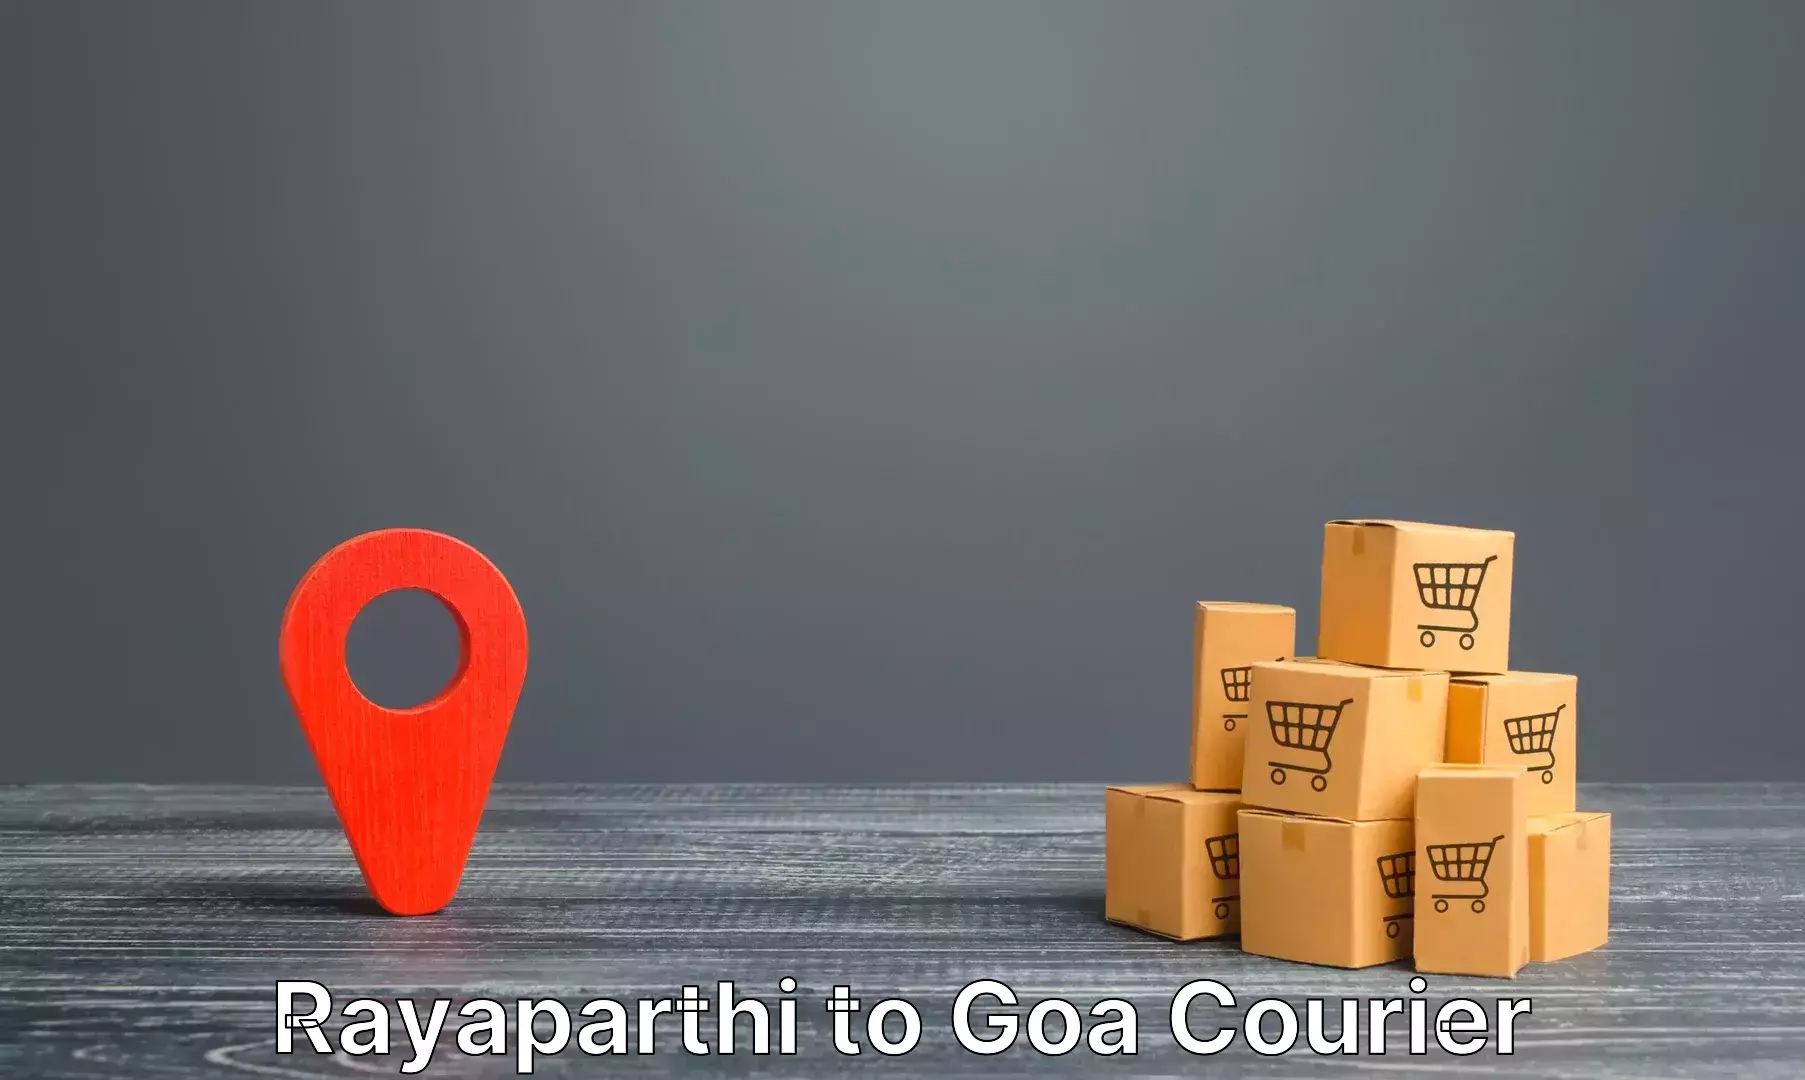 Luggage delivery network Rayaparthi to IIT Goa